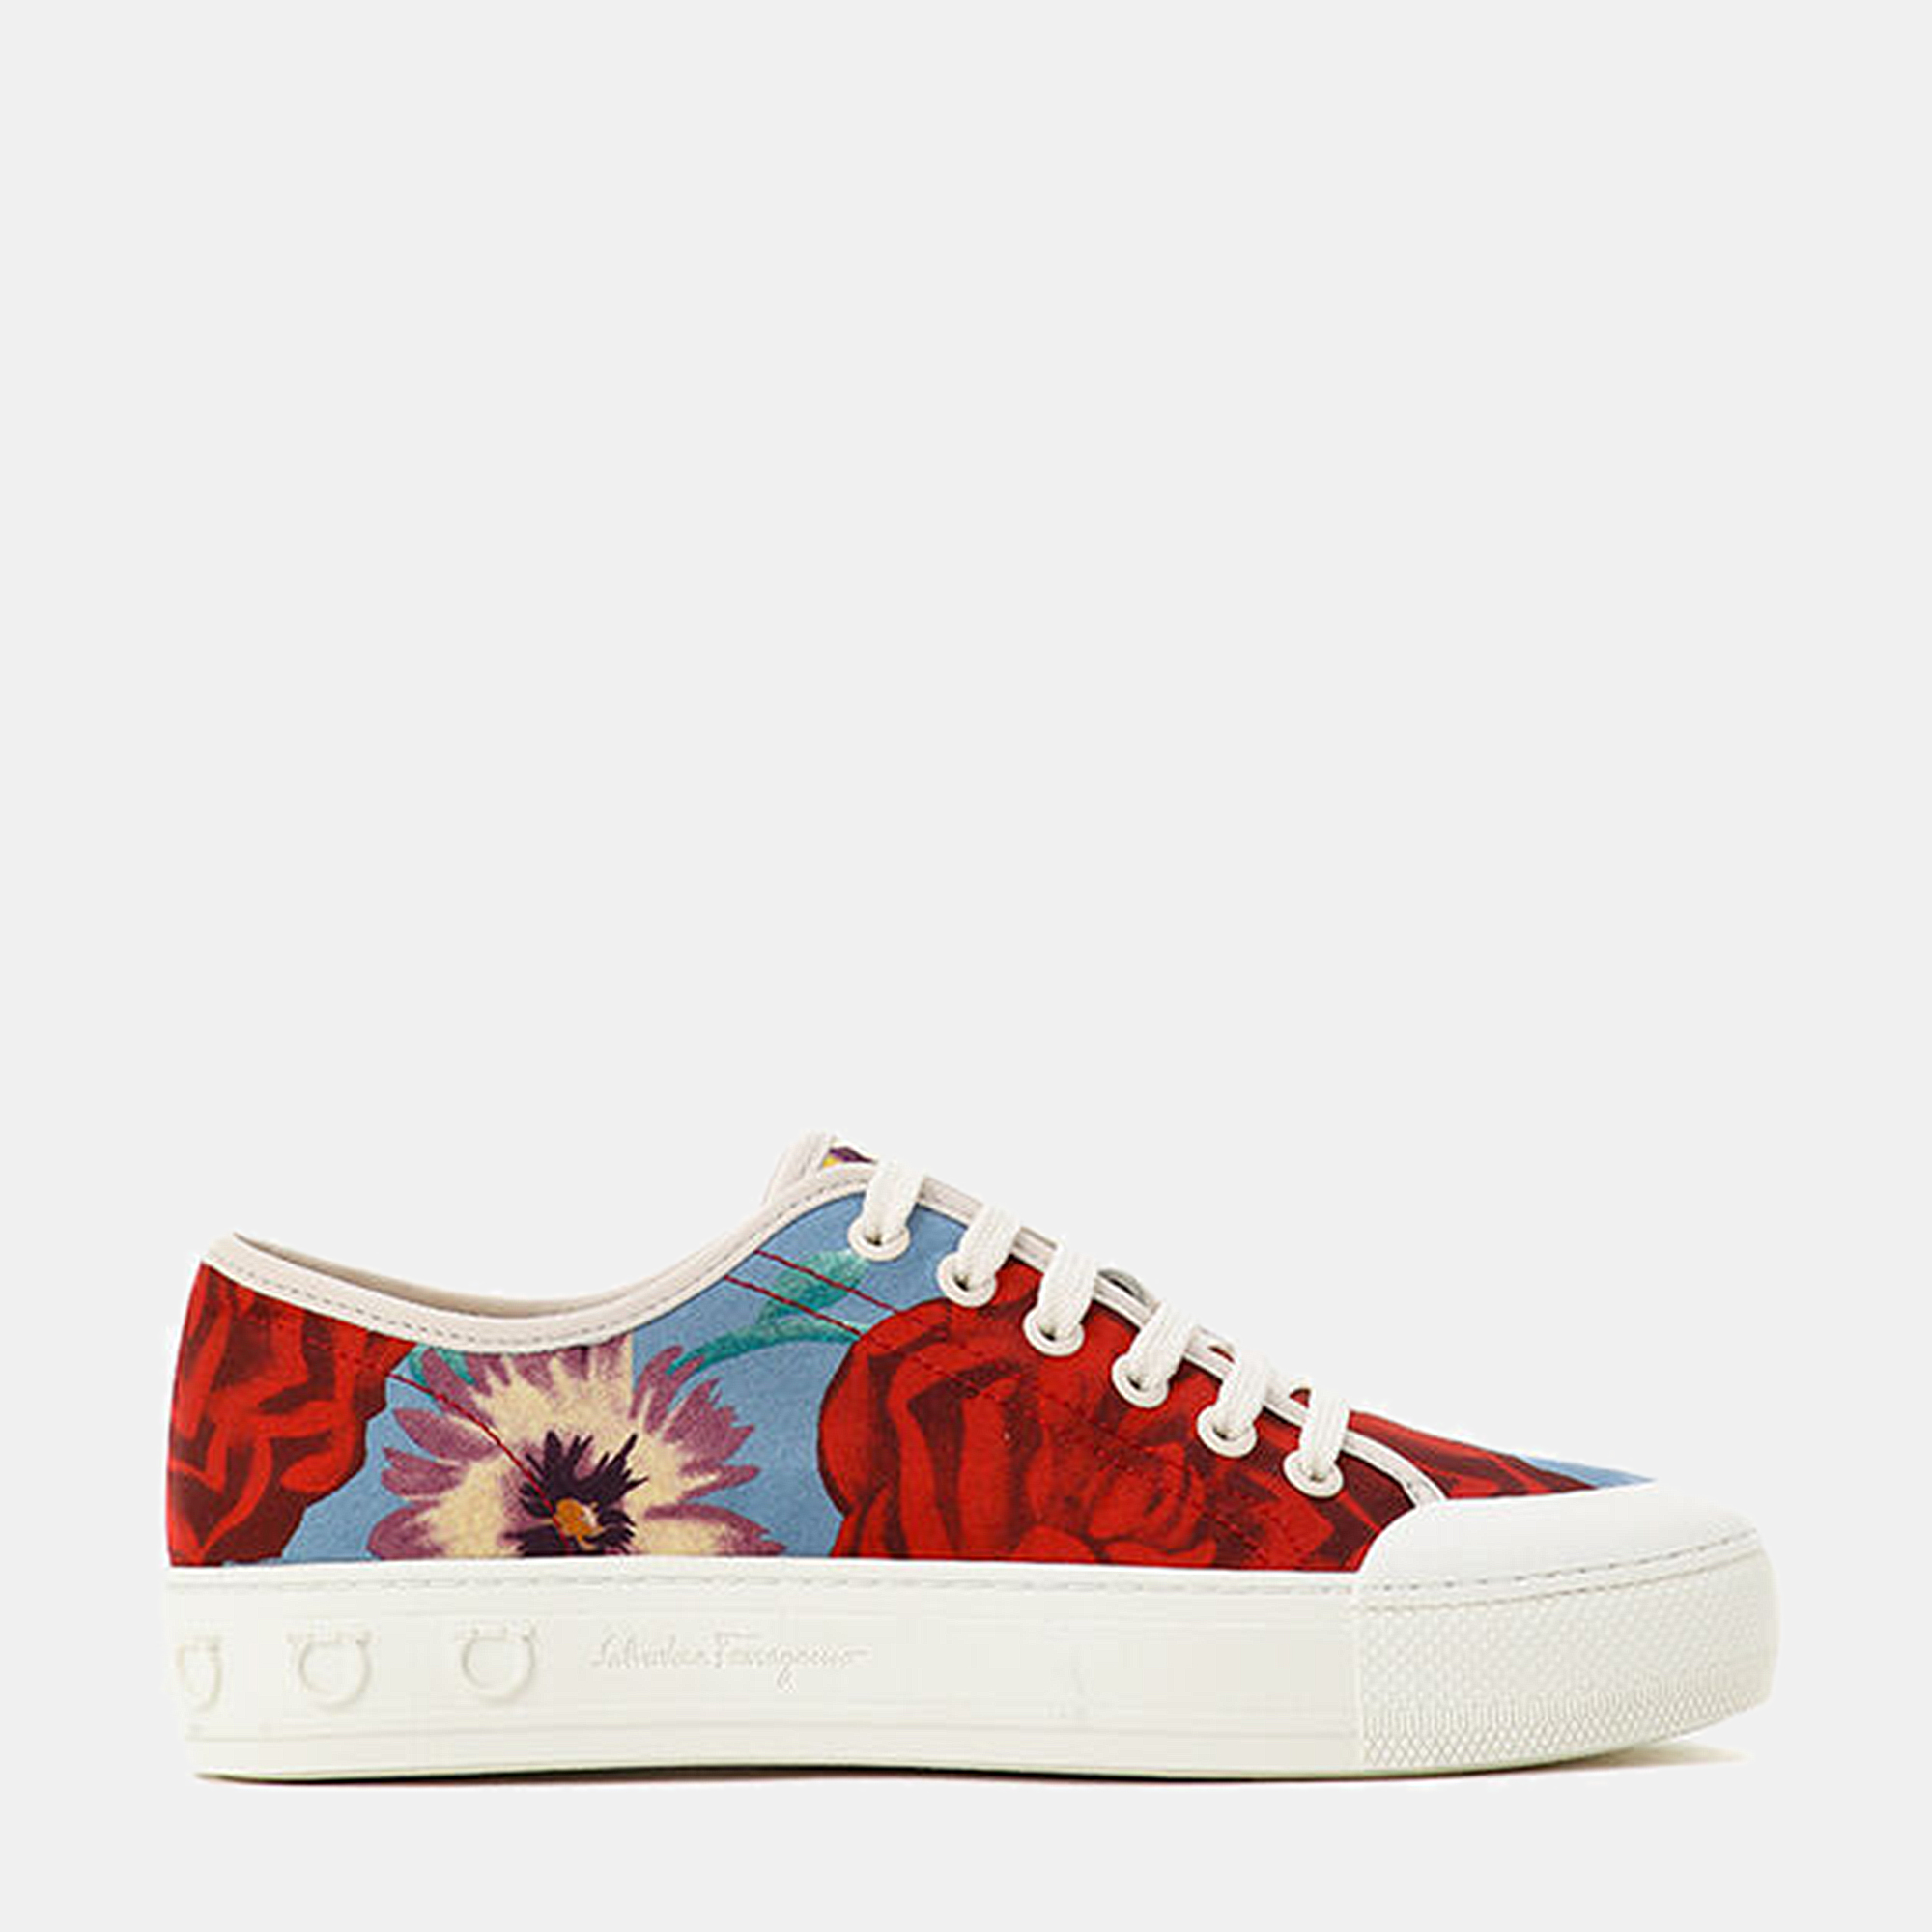 Salvatore Ferragamo Multicolor Floral Printed Sneakers Size 38